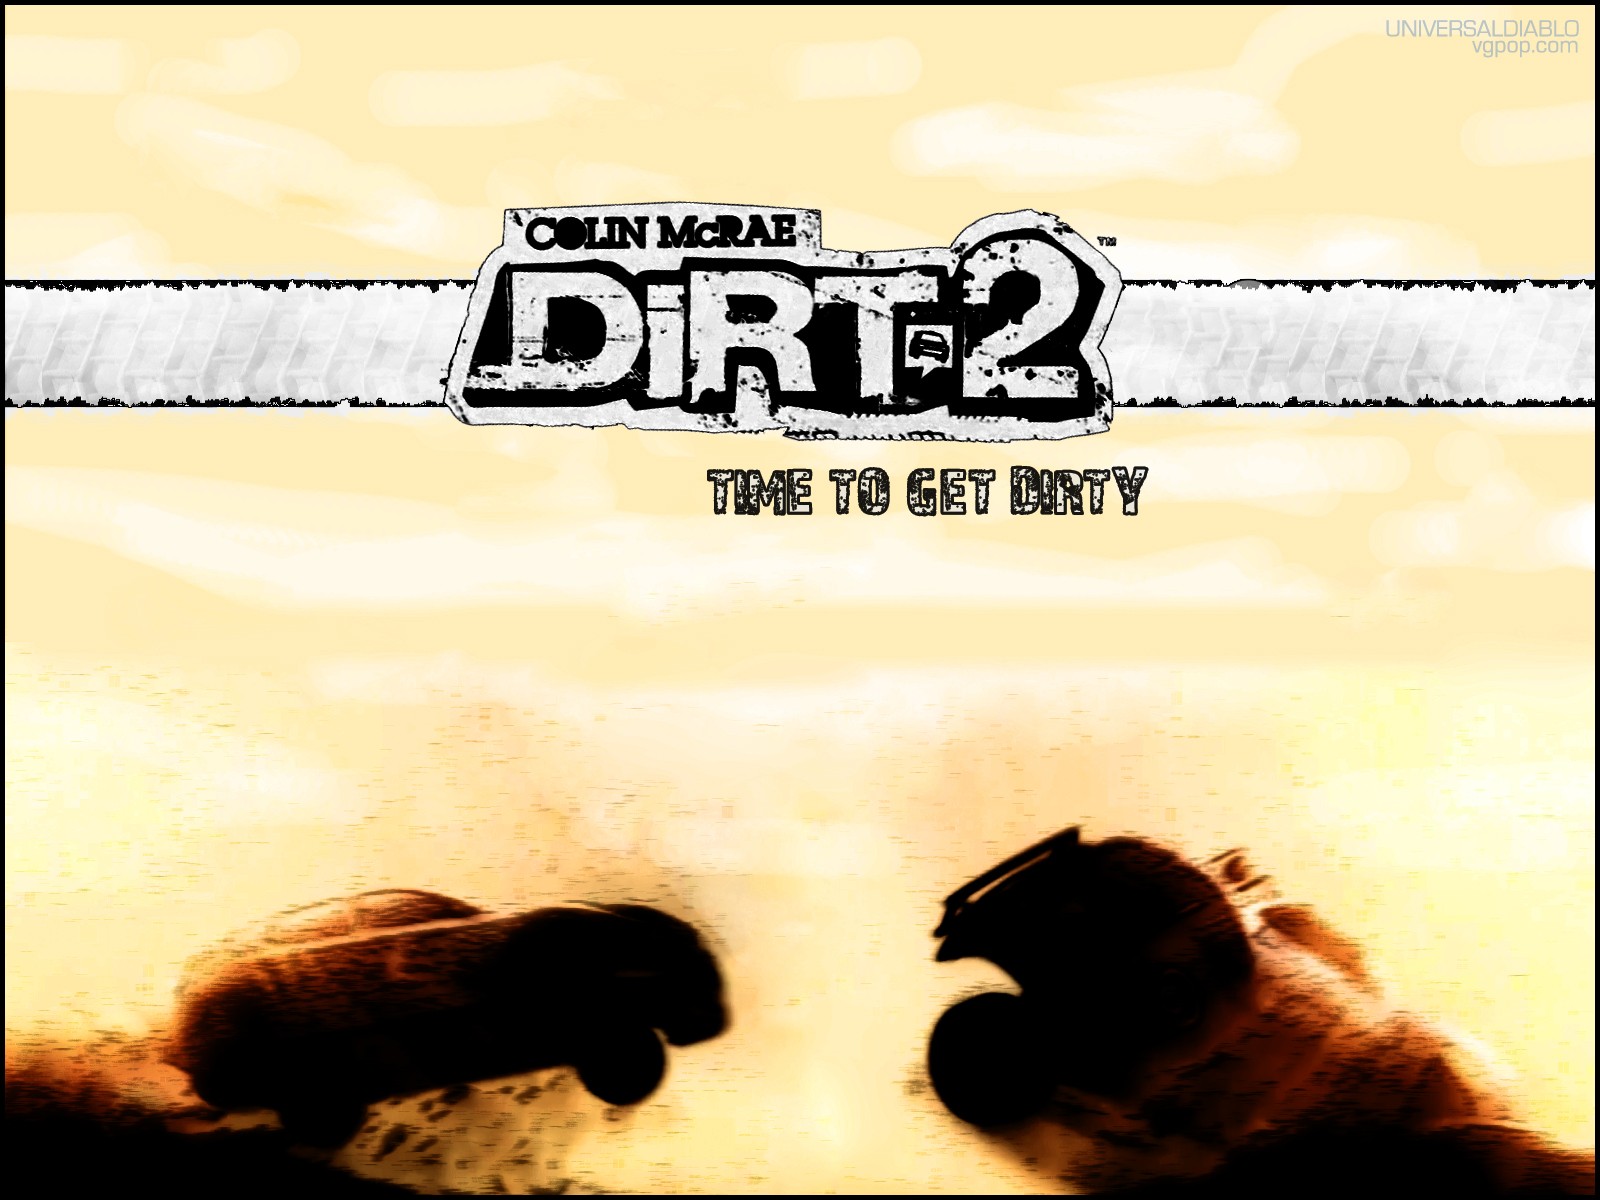 Colin Mcrae Dirt 2, Video games, Car Wallpaper